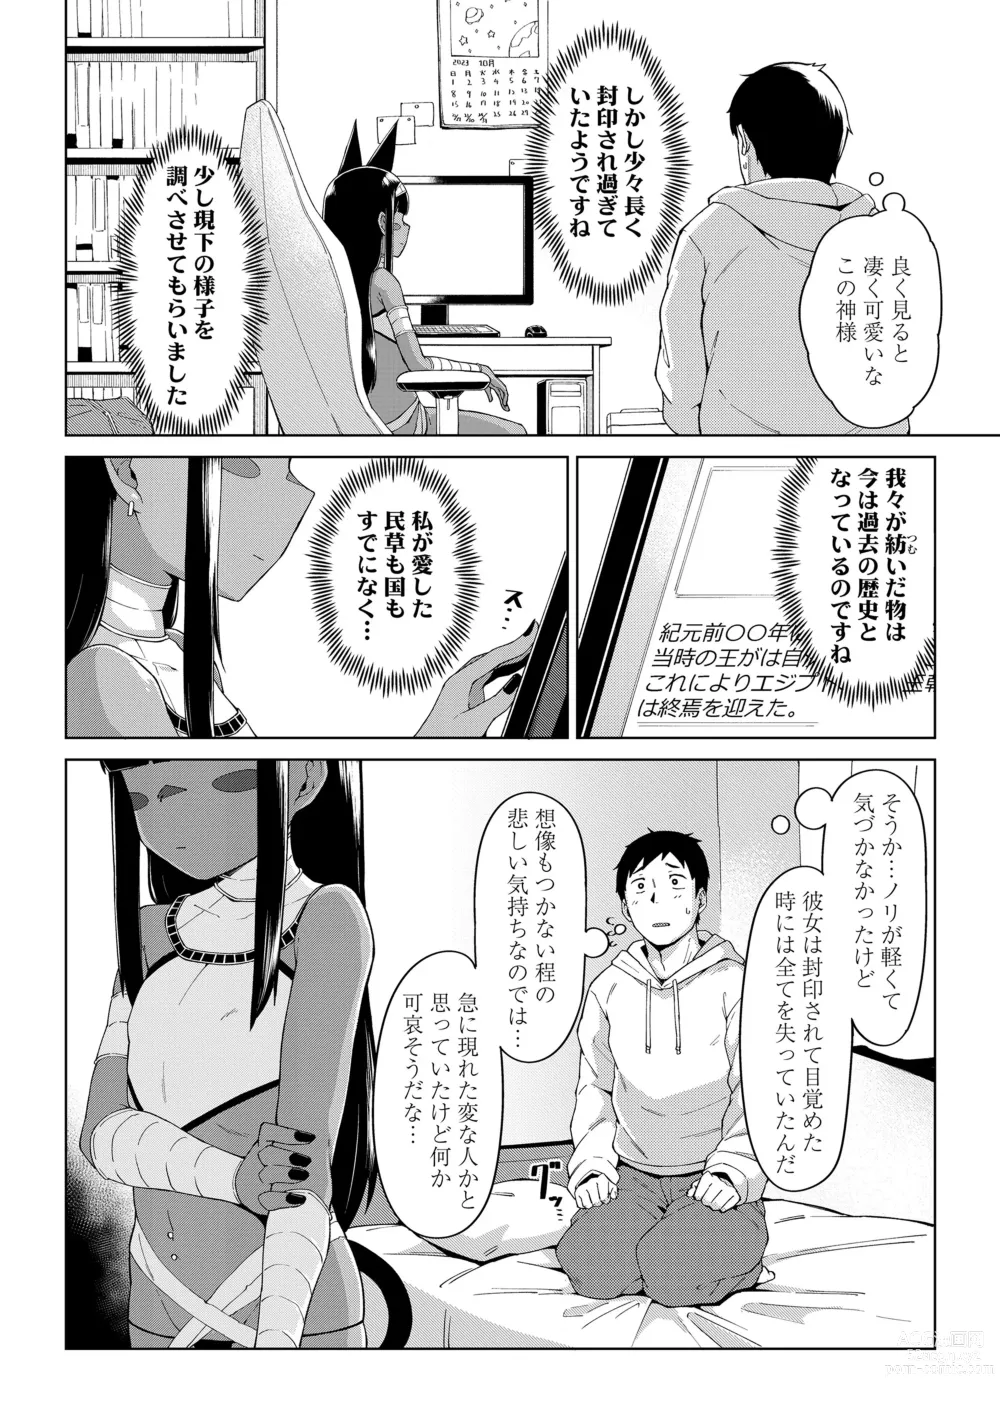 Page 6 of manga Towako Oboro Emaki 13